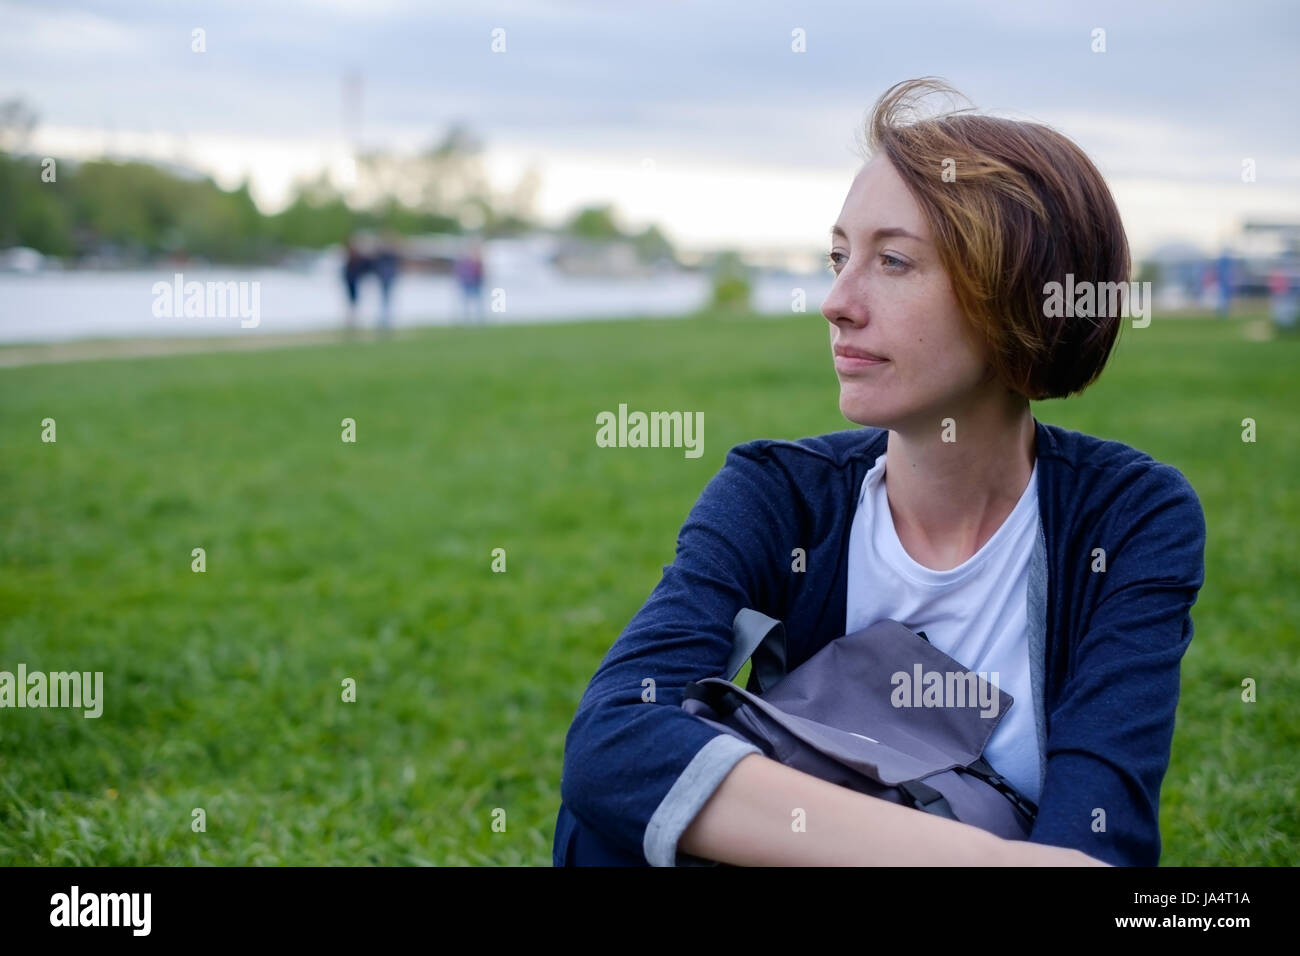 Una ragazza con le lentiggini si siede sul prato verde nel parco. ha uno zaino nelle sue mani. avere un periodo di riposo in estate all'aria fresca. Foto Stock